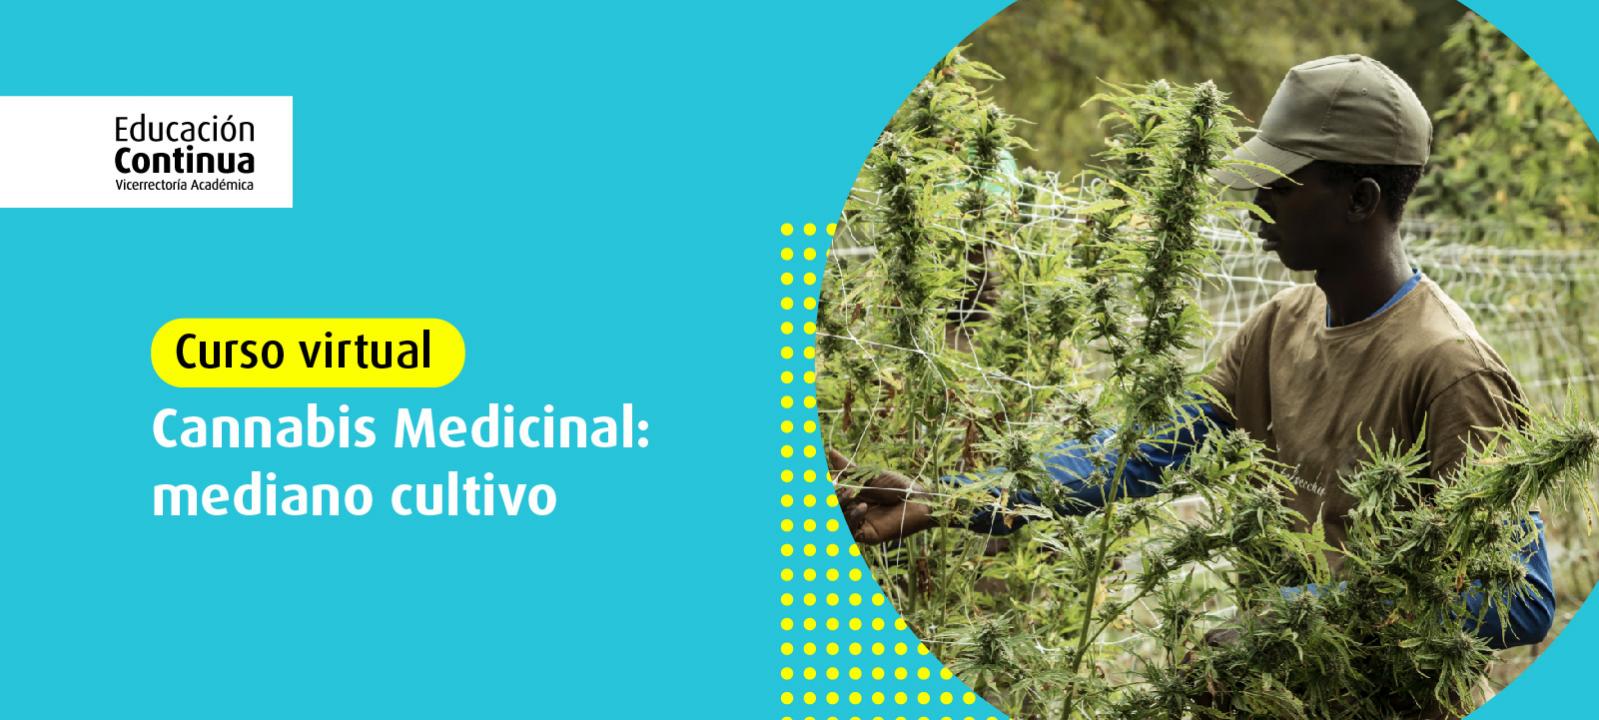 Curso virtual | Cannabis medicinal: mediano cultivo